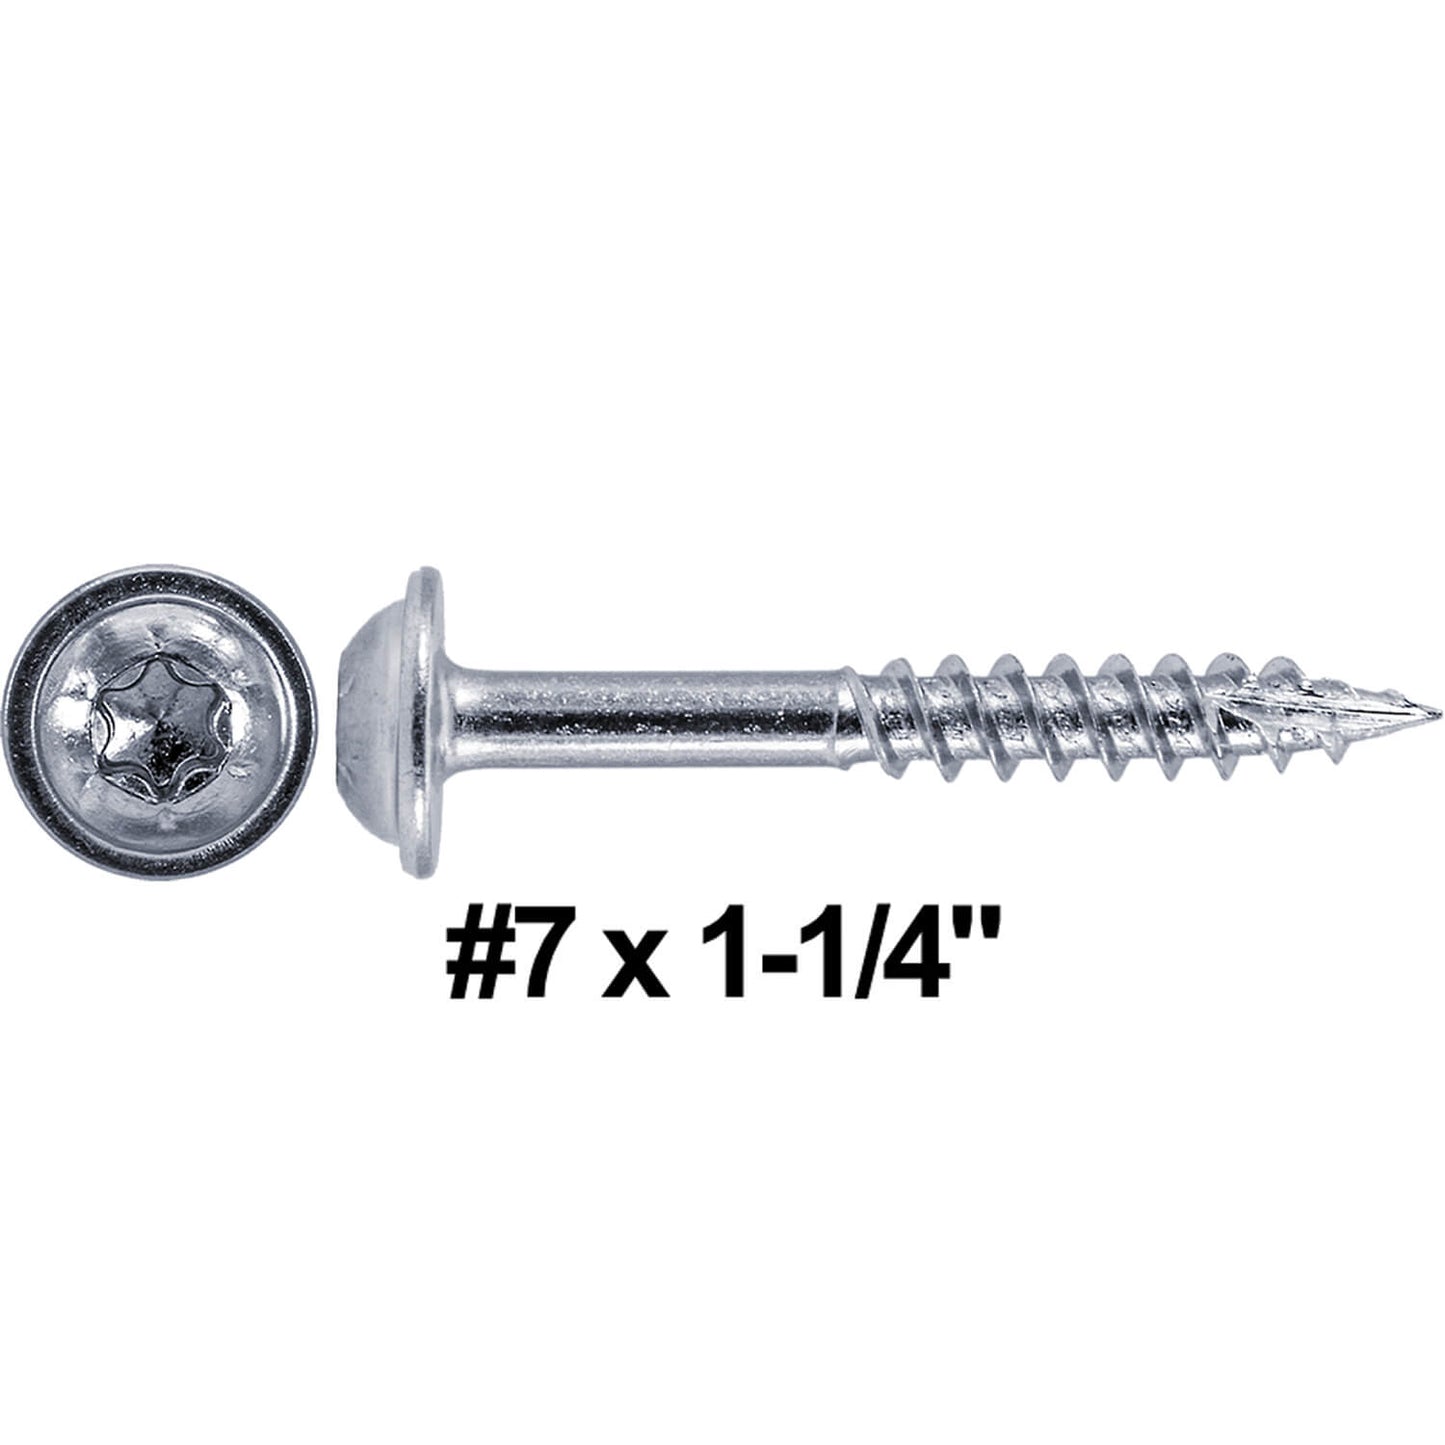 #7 Pocket Hole Torx/Star Head Screws FINE Thread - - Torx/Star Drive Pocket Hole Screws for Cabinetry & Furniture  - T-20 Torx Screw Head